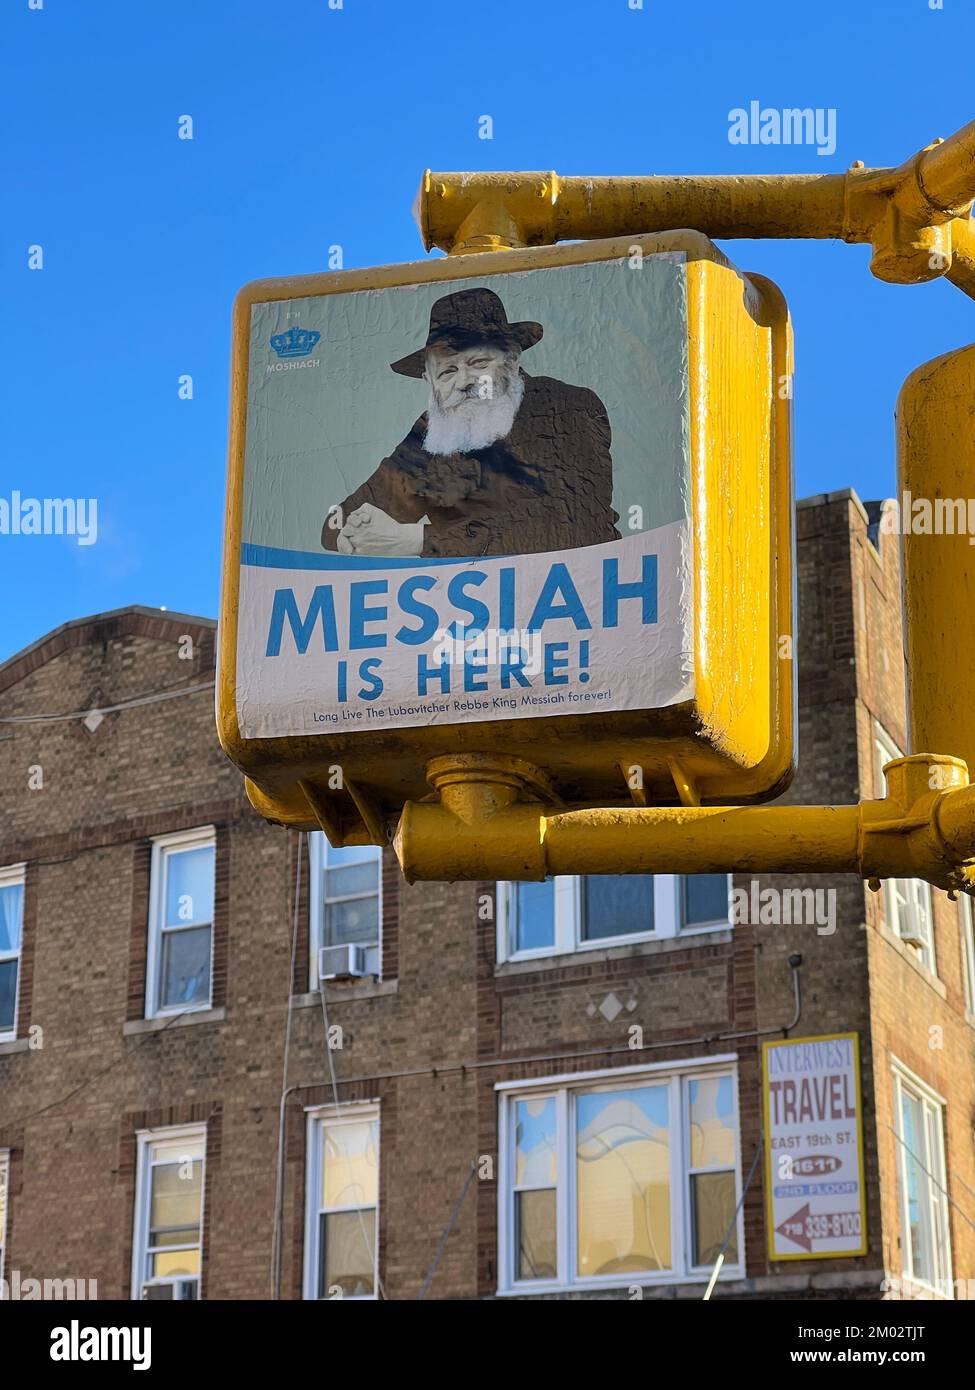 Bild von Rabbi Schneerson, an einer Ampel auf dem Kings Highway in Brooklyn. Viele in der Chabad-Gemeinde glauben, dass Rabbi Menachem Mendel Schneerson, der verstorbene siebte Rebbe der Chabad-Lubavitch-Dynastie, der jüdische messias ist. Stockfoto